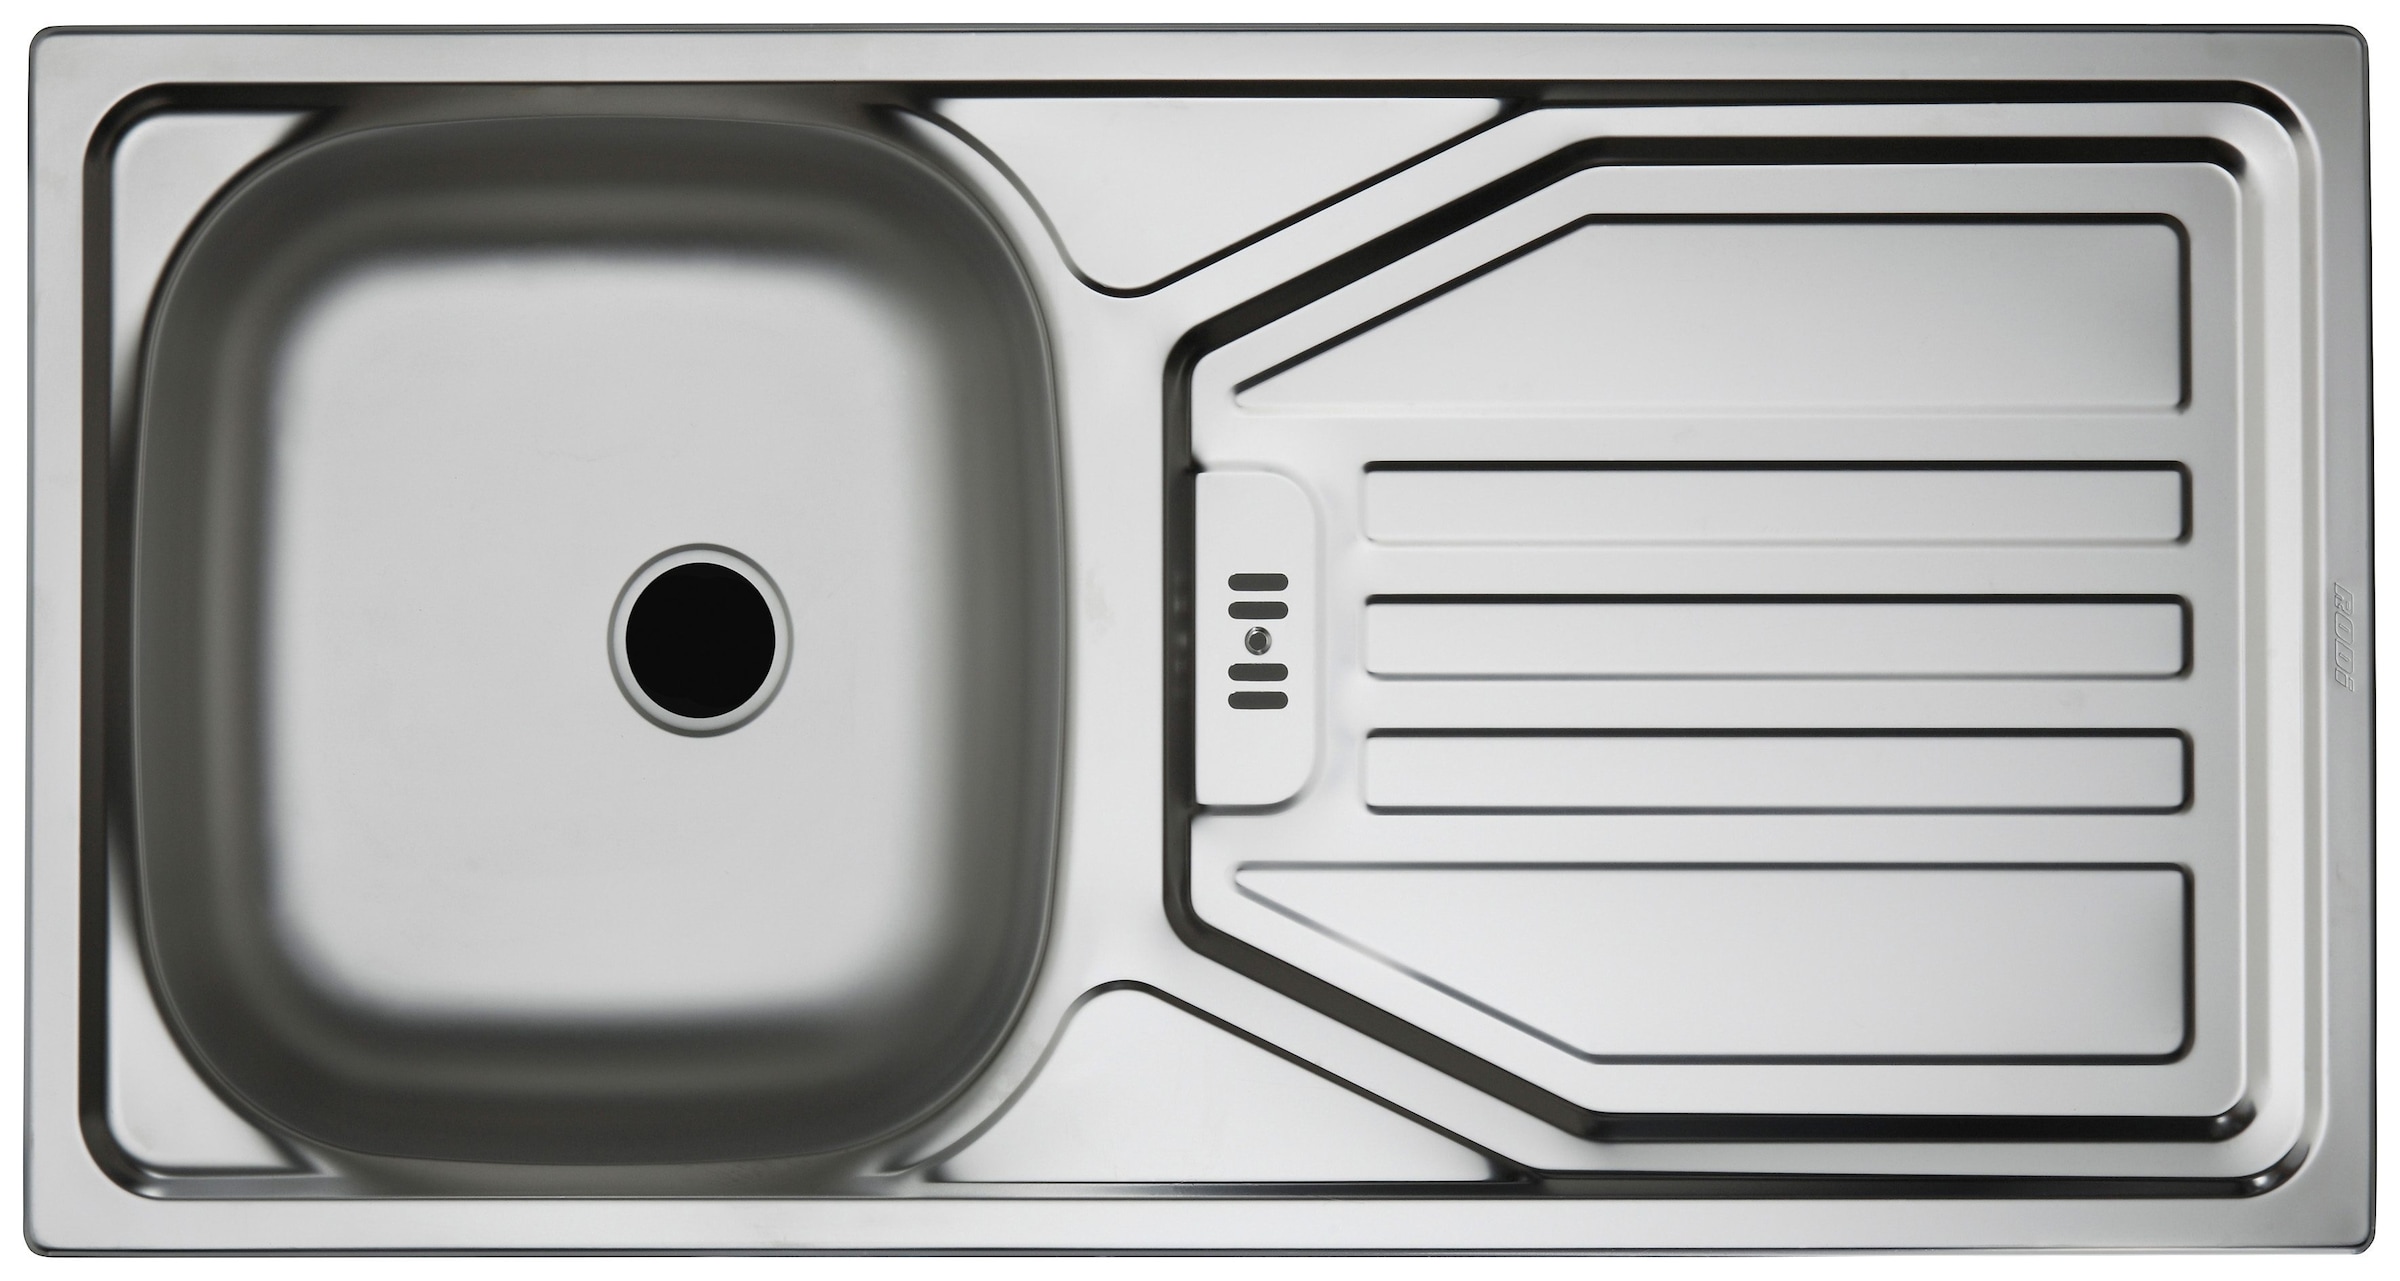 wiho Küchen Küchenzeile »Linz«, mit E-Geräten, Breite 280 cm online kaufen